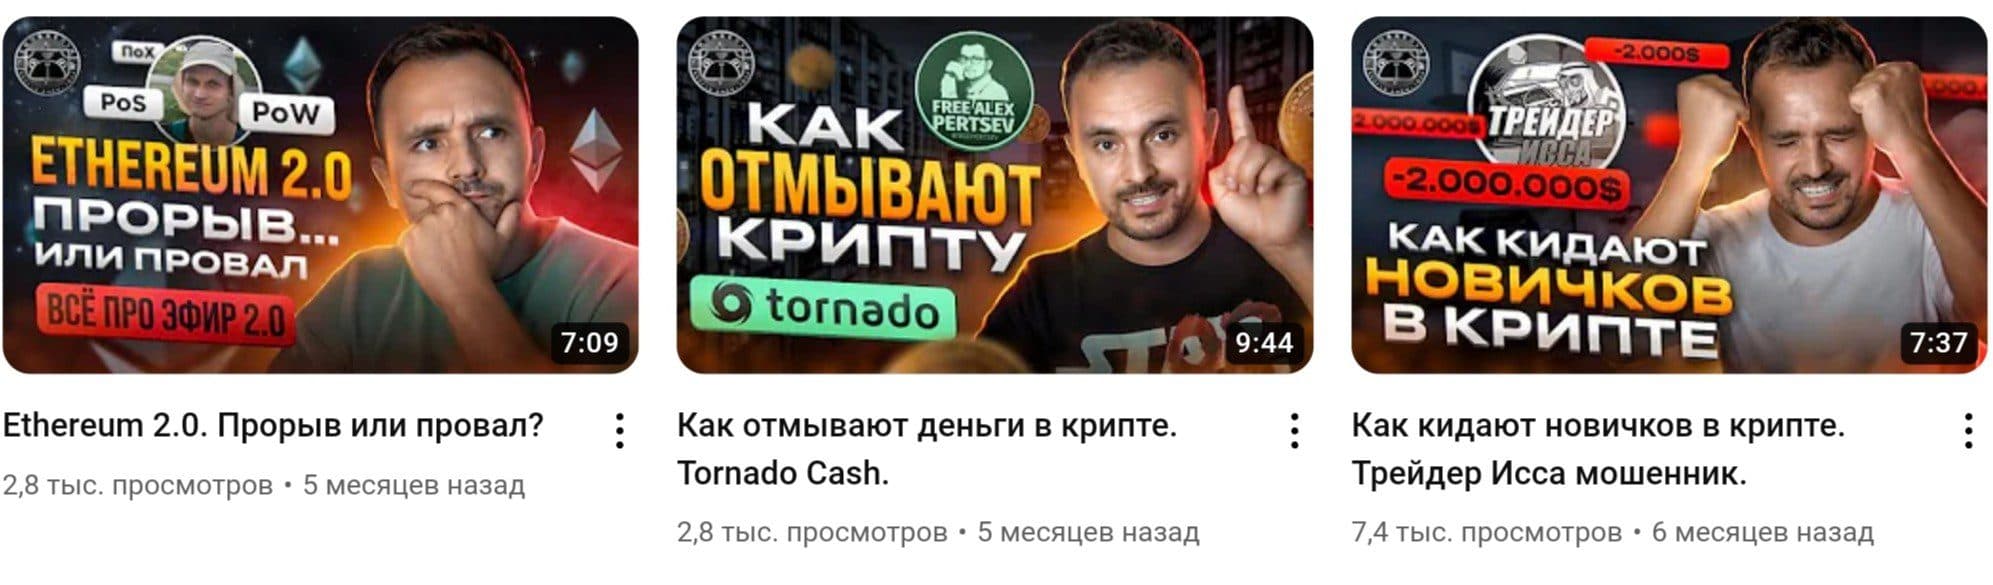 Глеб Корнилов ютуб канал